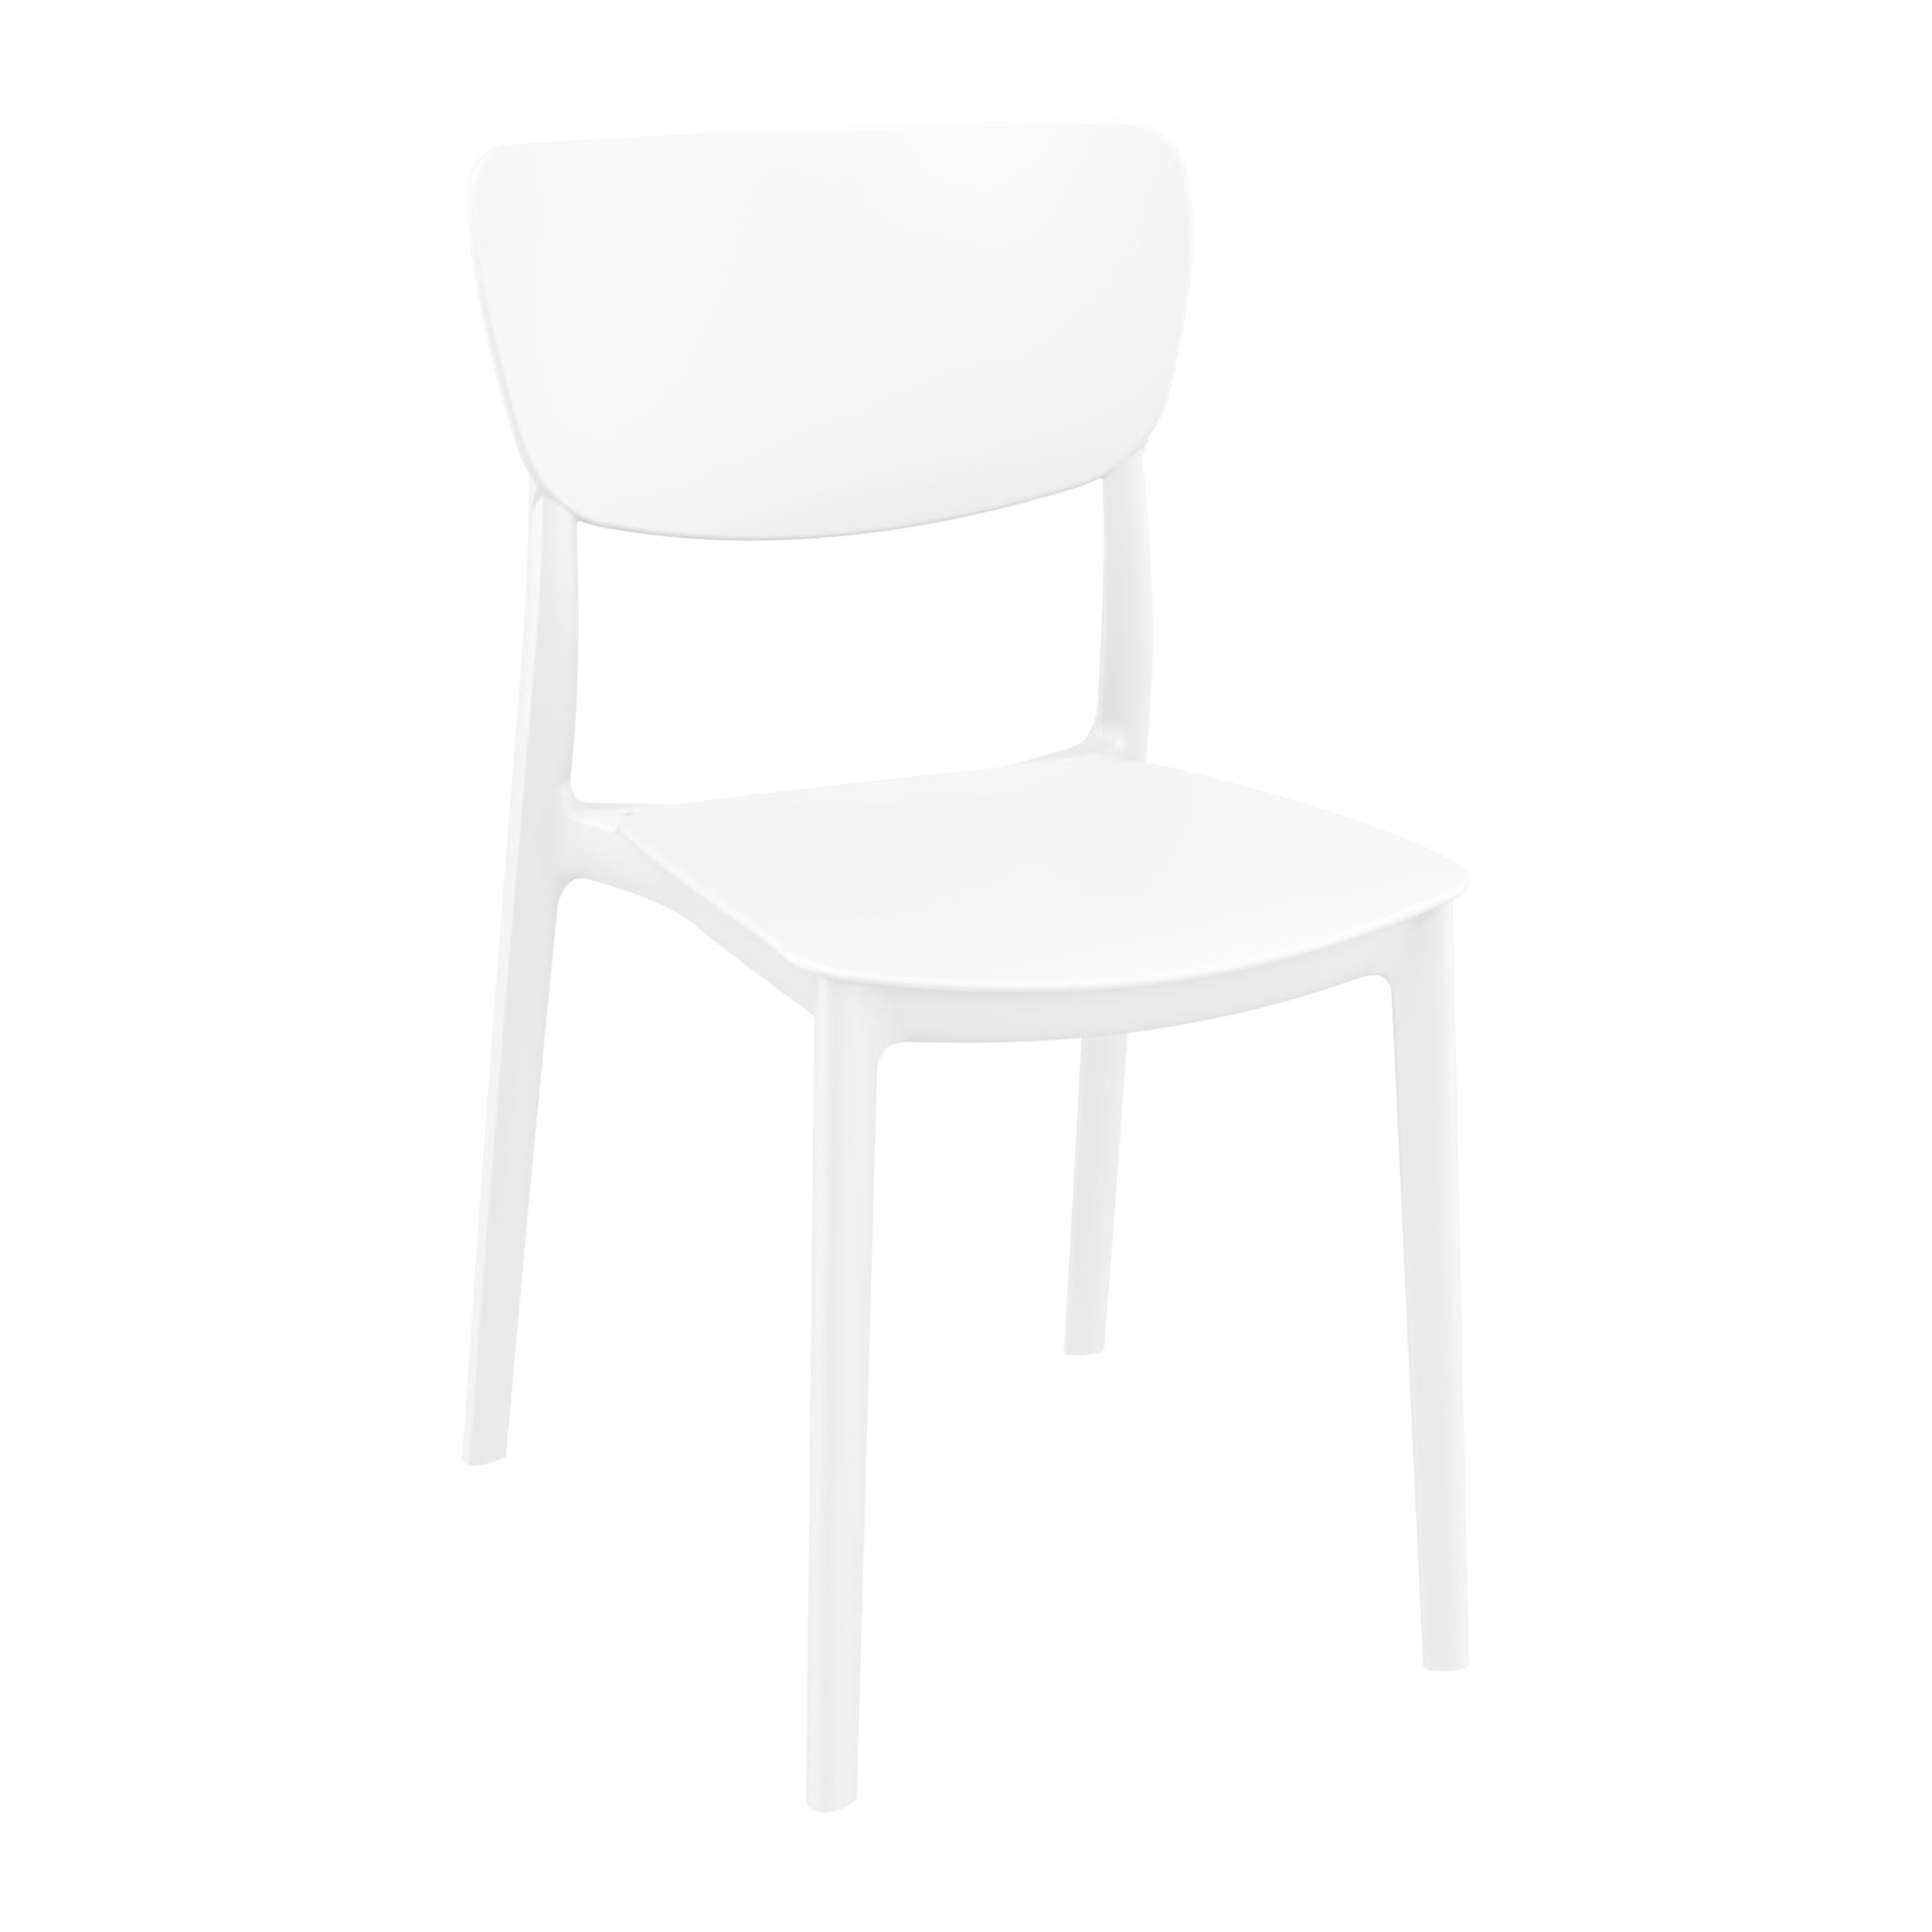 Manna Side Chair - White